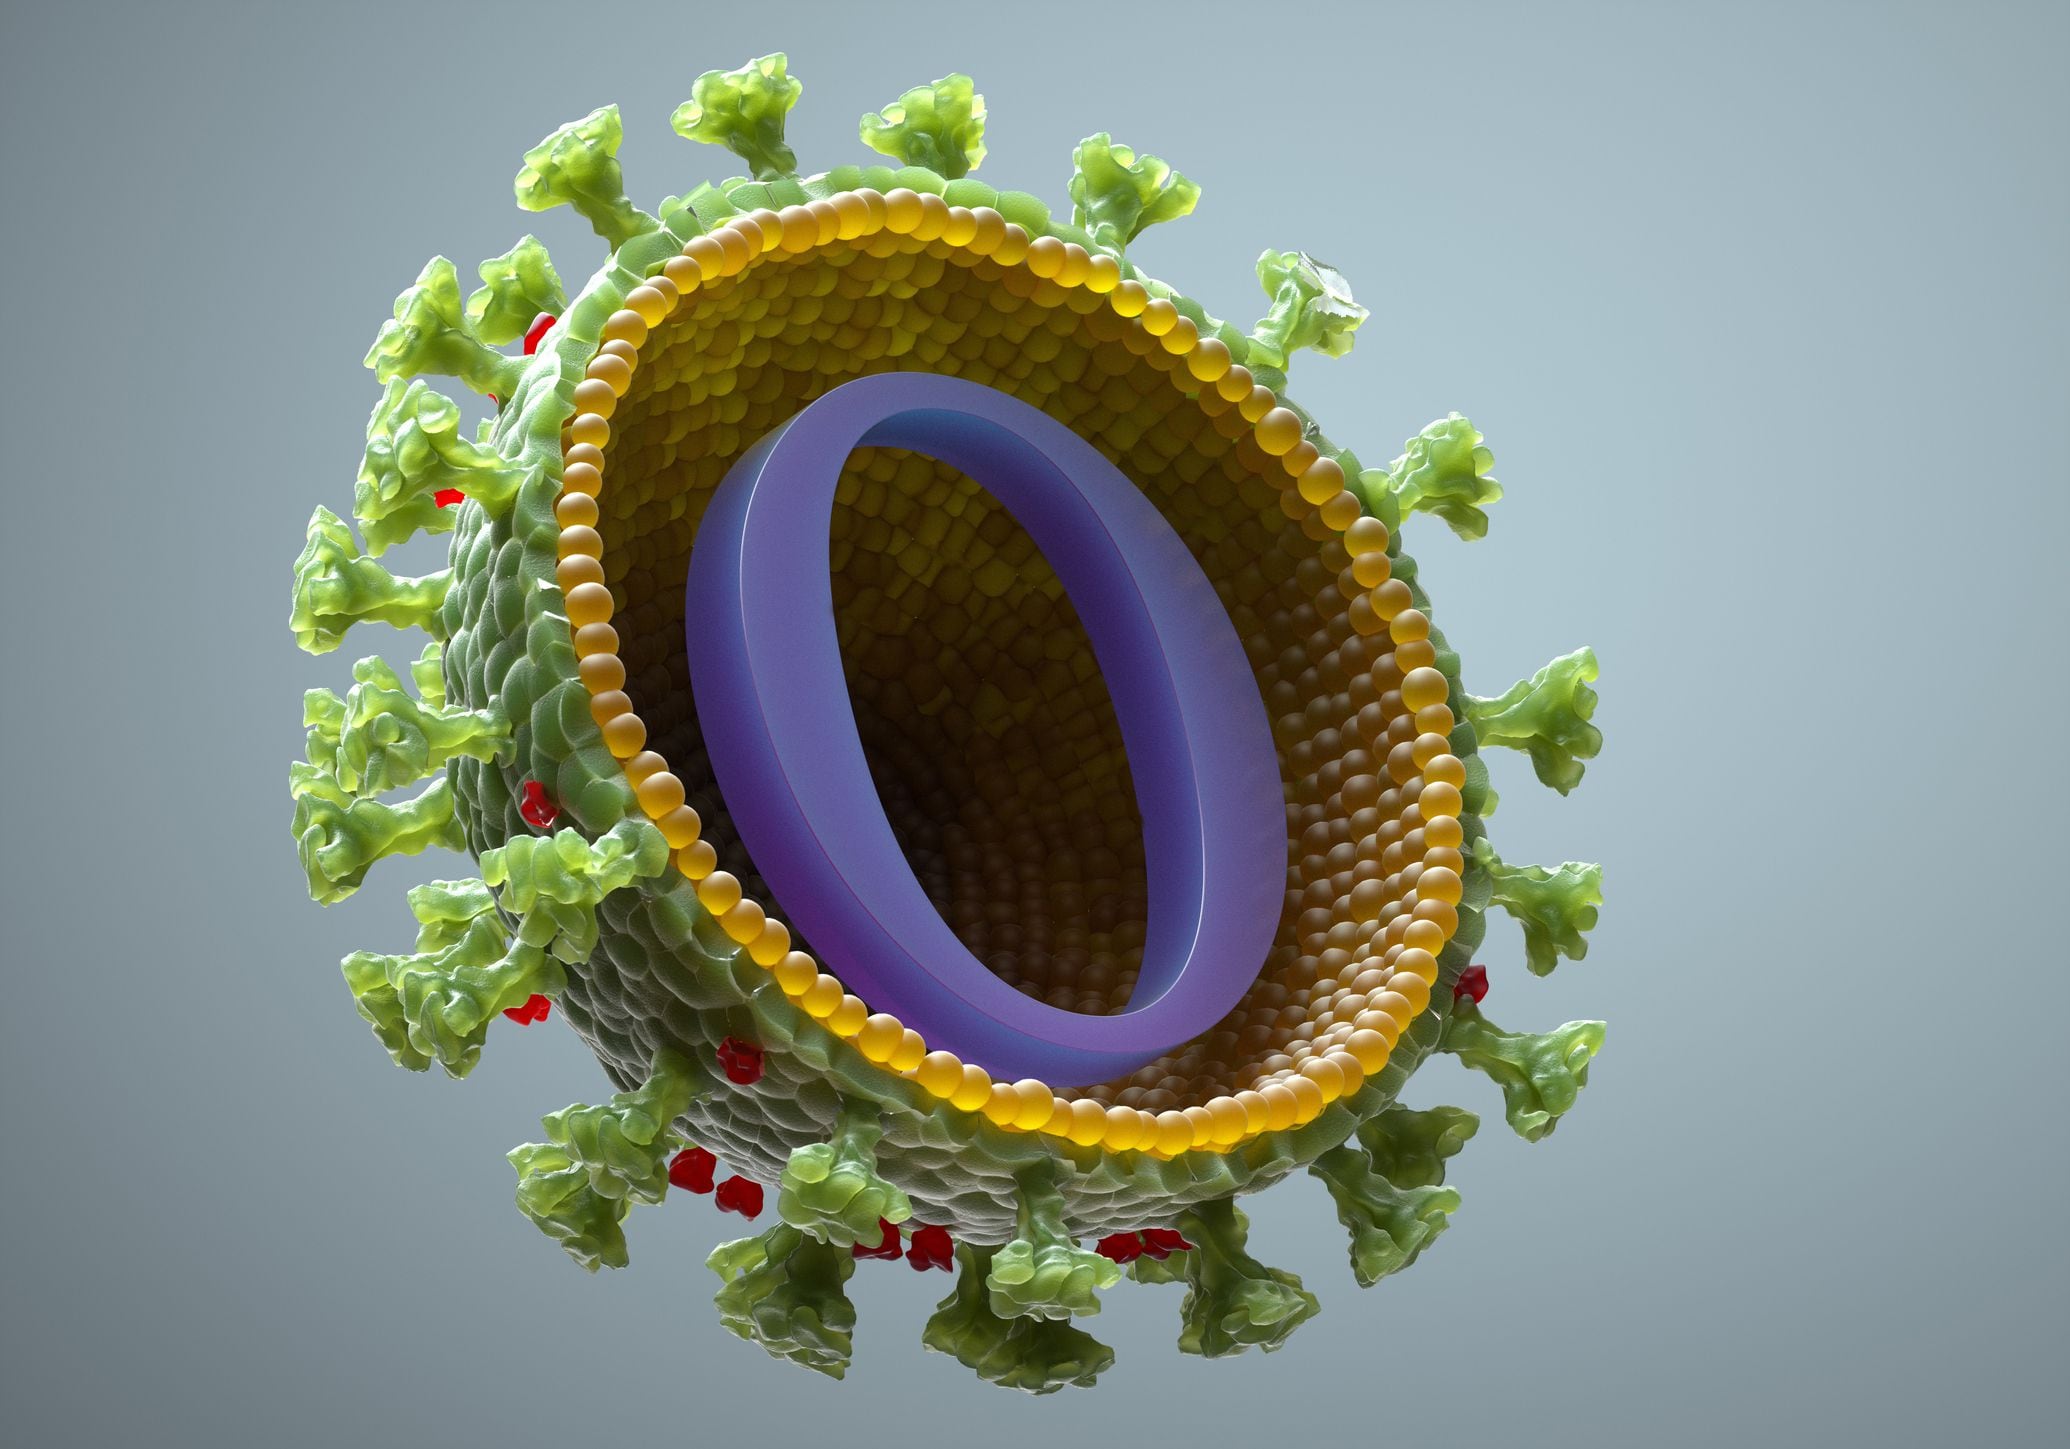 Las subvariantes Ómicron BA.4 y BA.5 del coronavirus SARS-CoV-2 han demostrado ser más sigilosas para evadir las defensas inmunitarias(Getty Images)